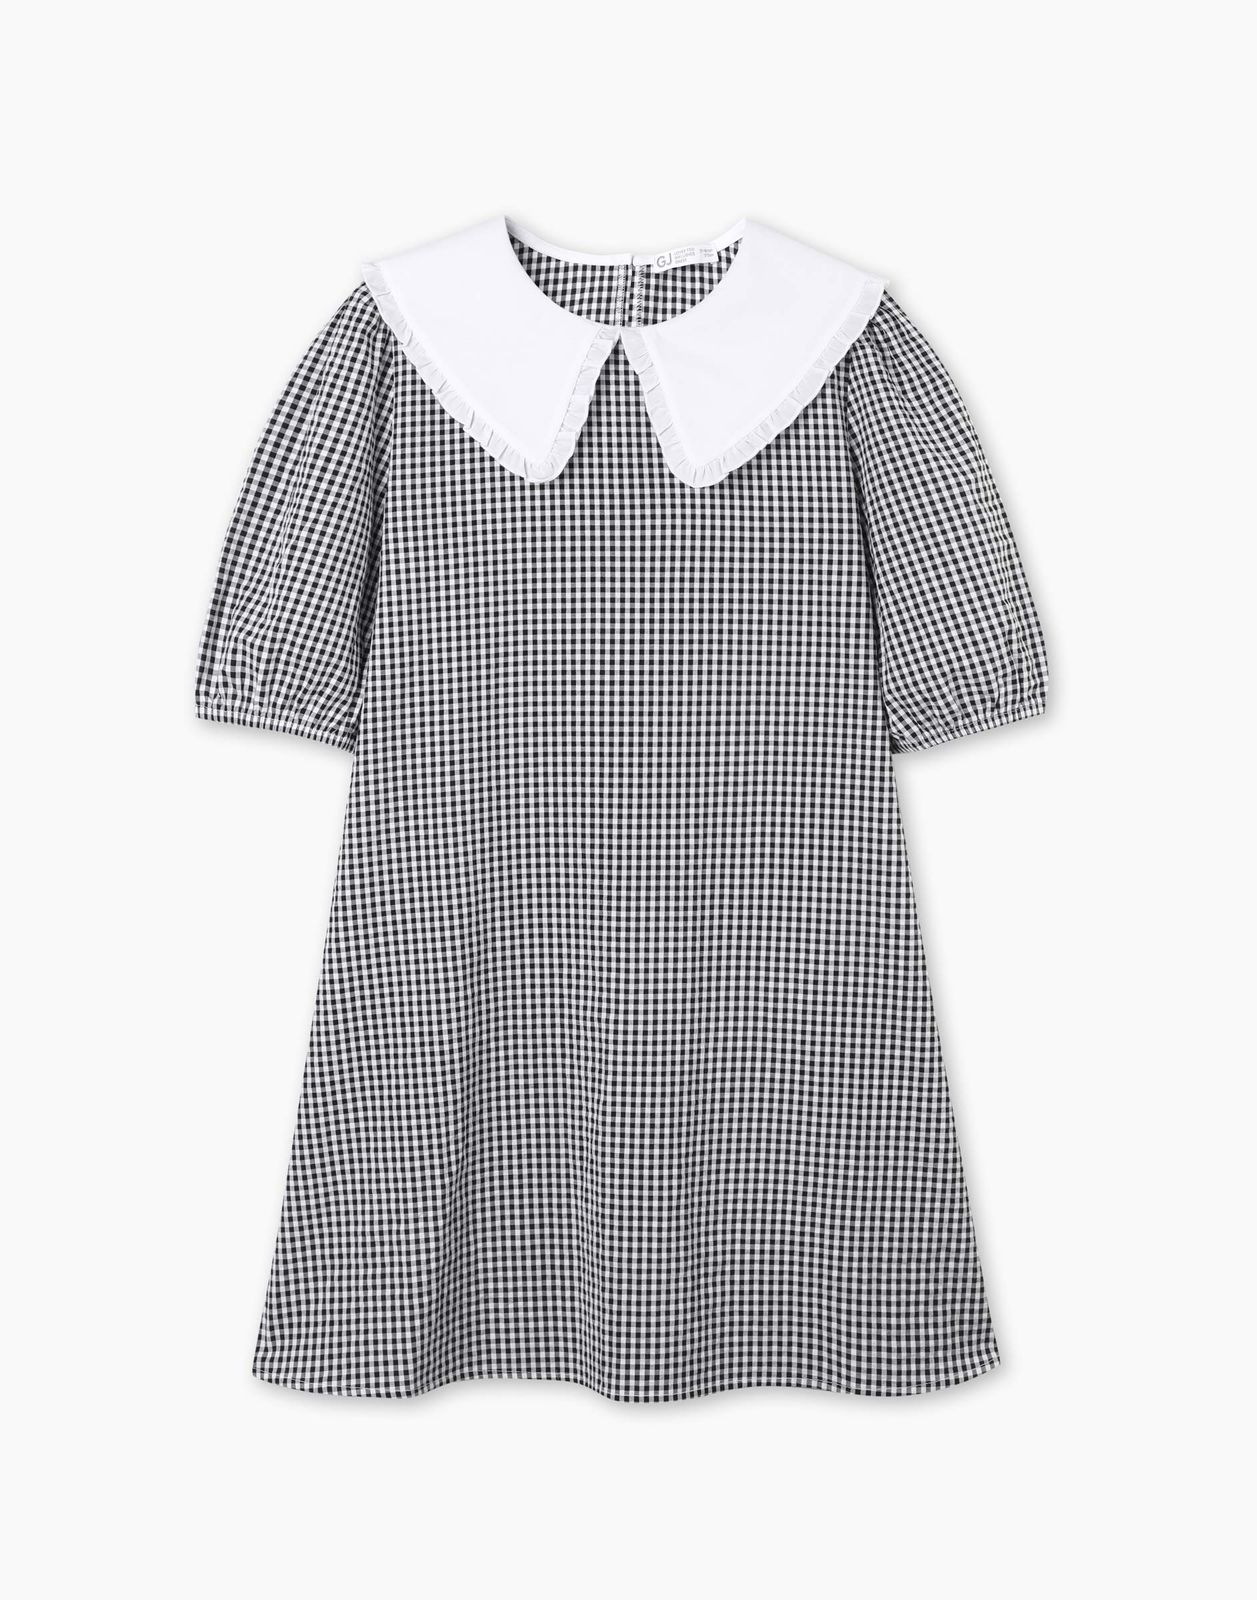 Платье детское Gloria Jeans GDR028214, белый/черный, 158